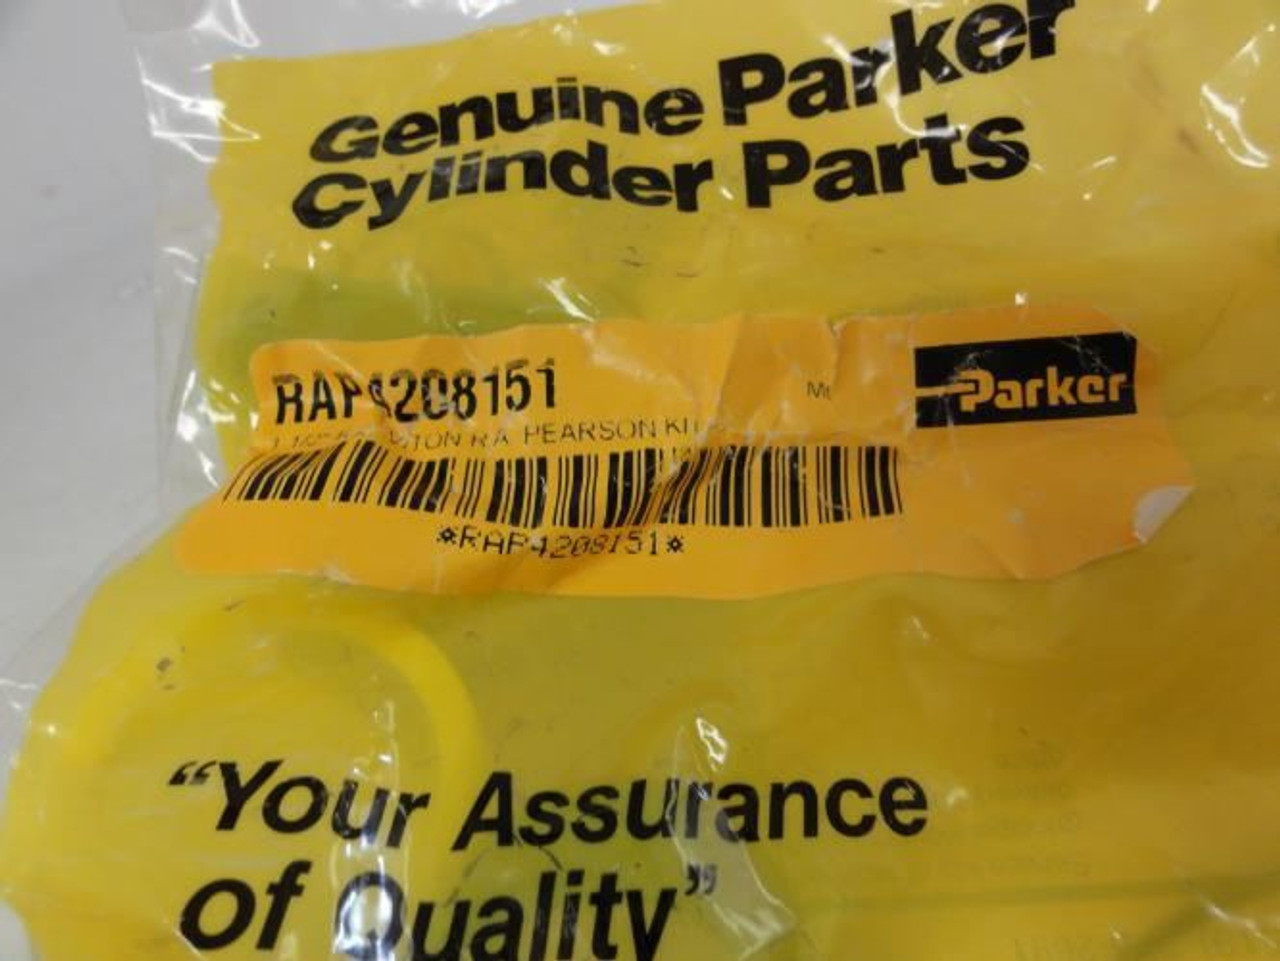 Parker RAP4208151; Cylinder Repair Kit 1 1/2" RA